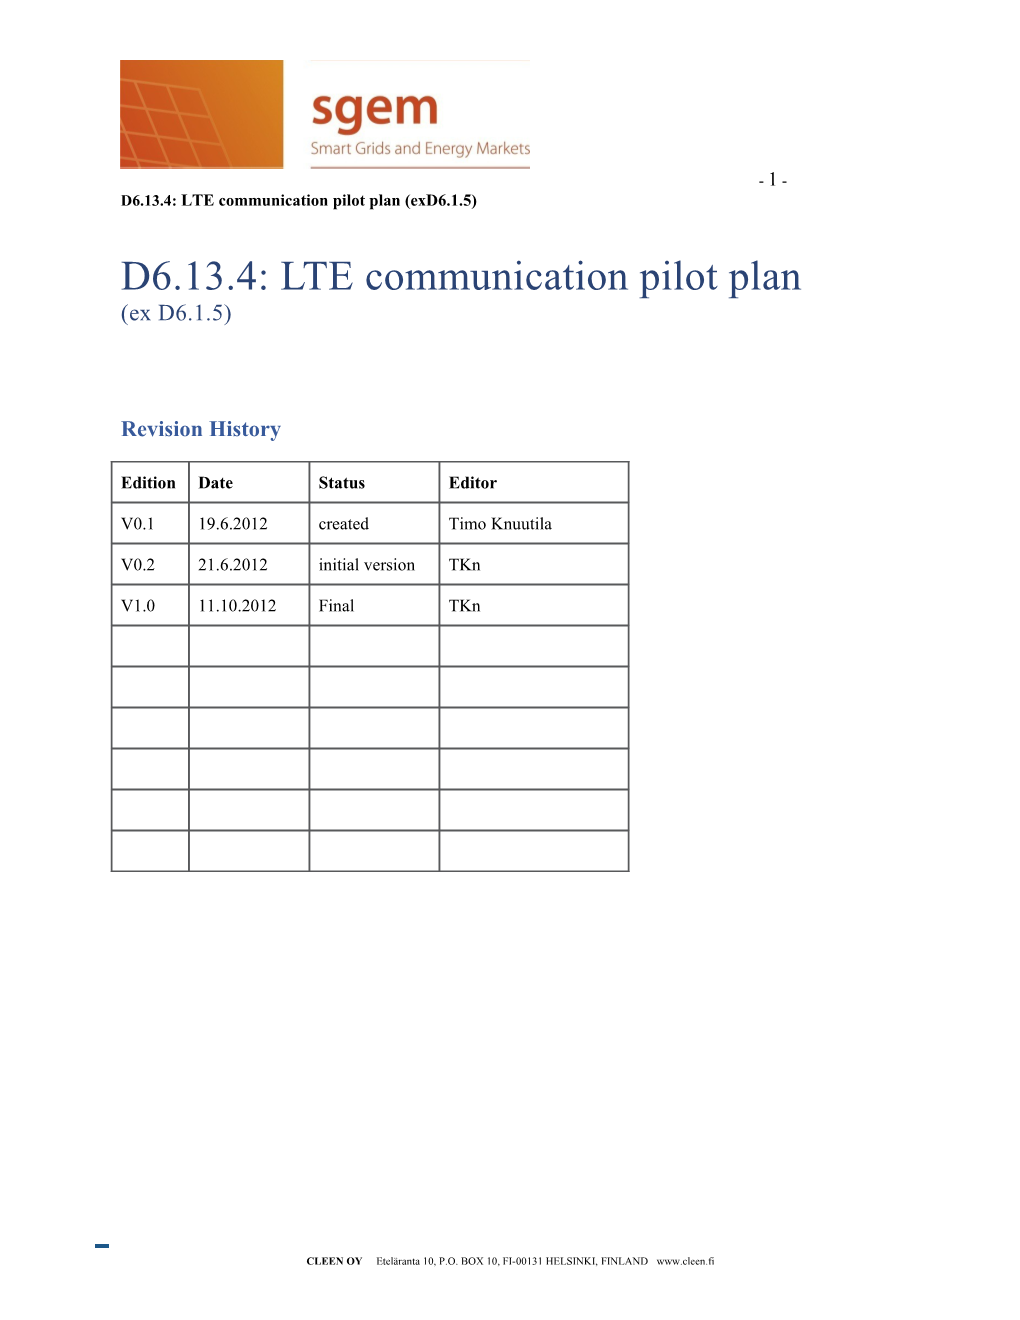 D6.13.4: LTE Communication Pilot Plan